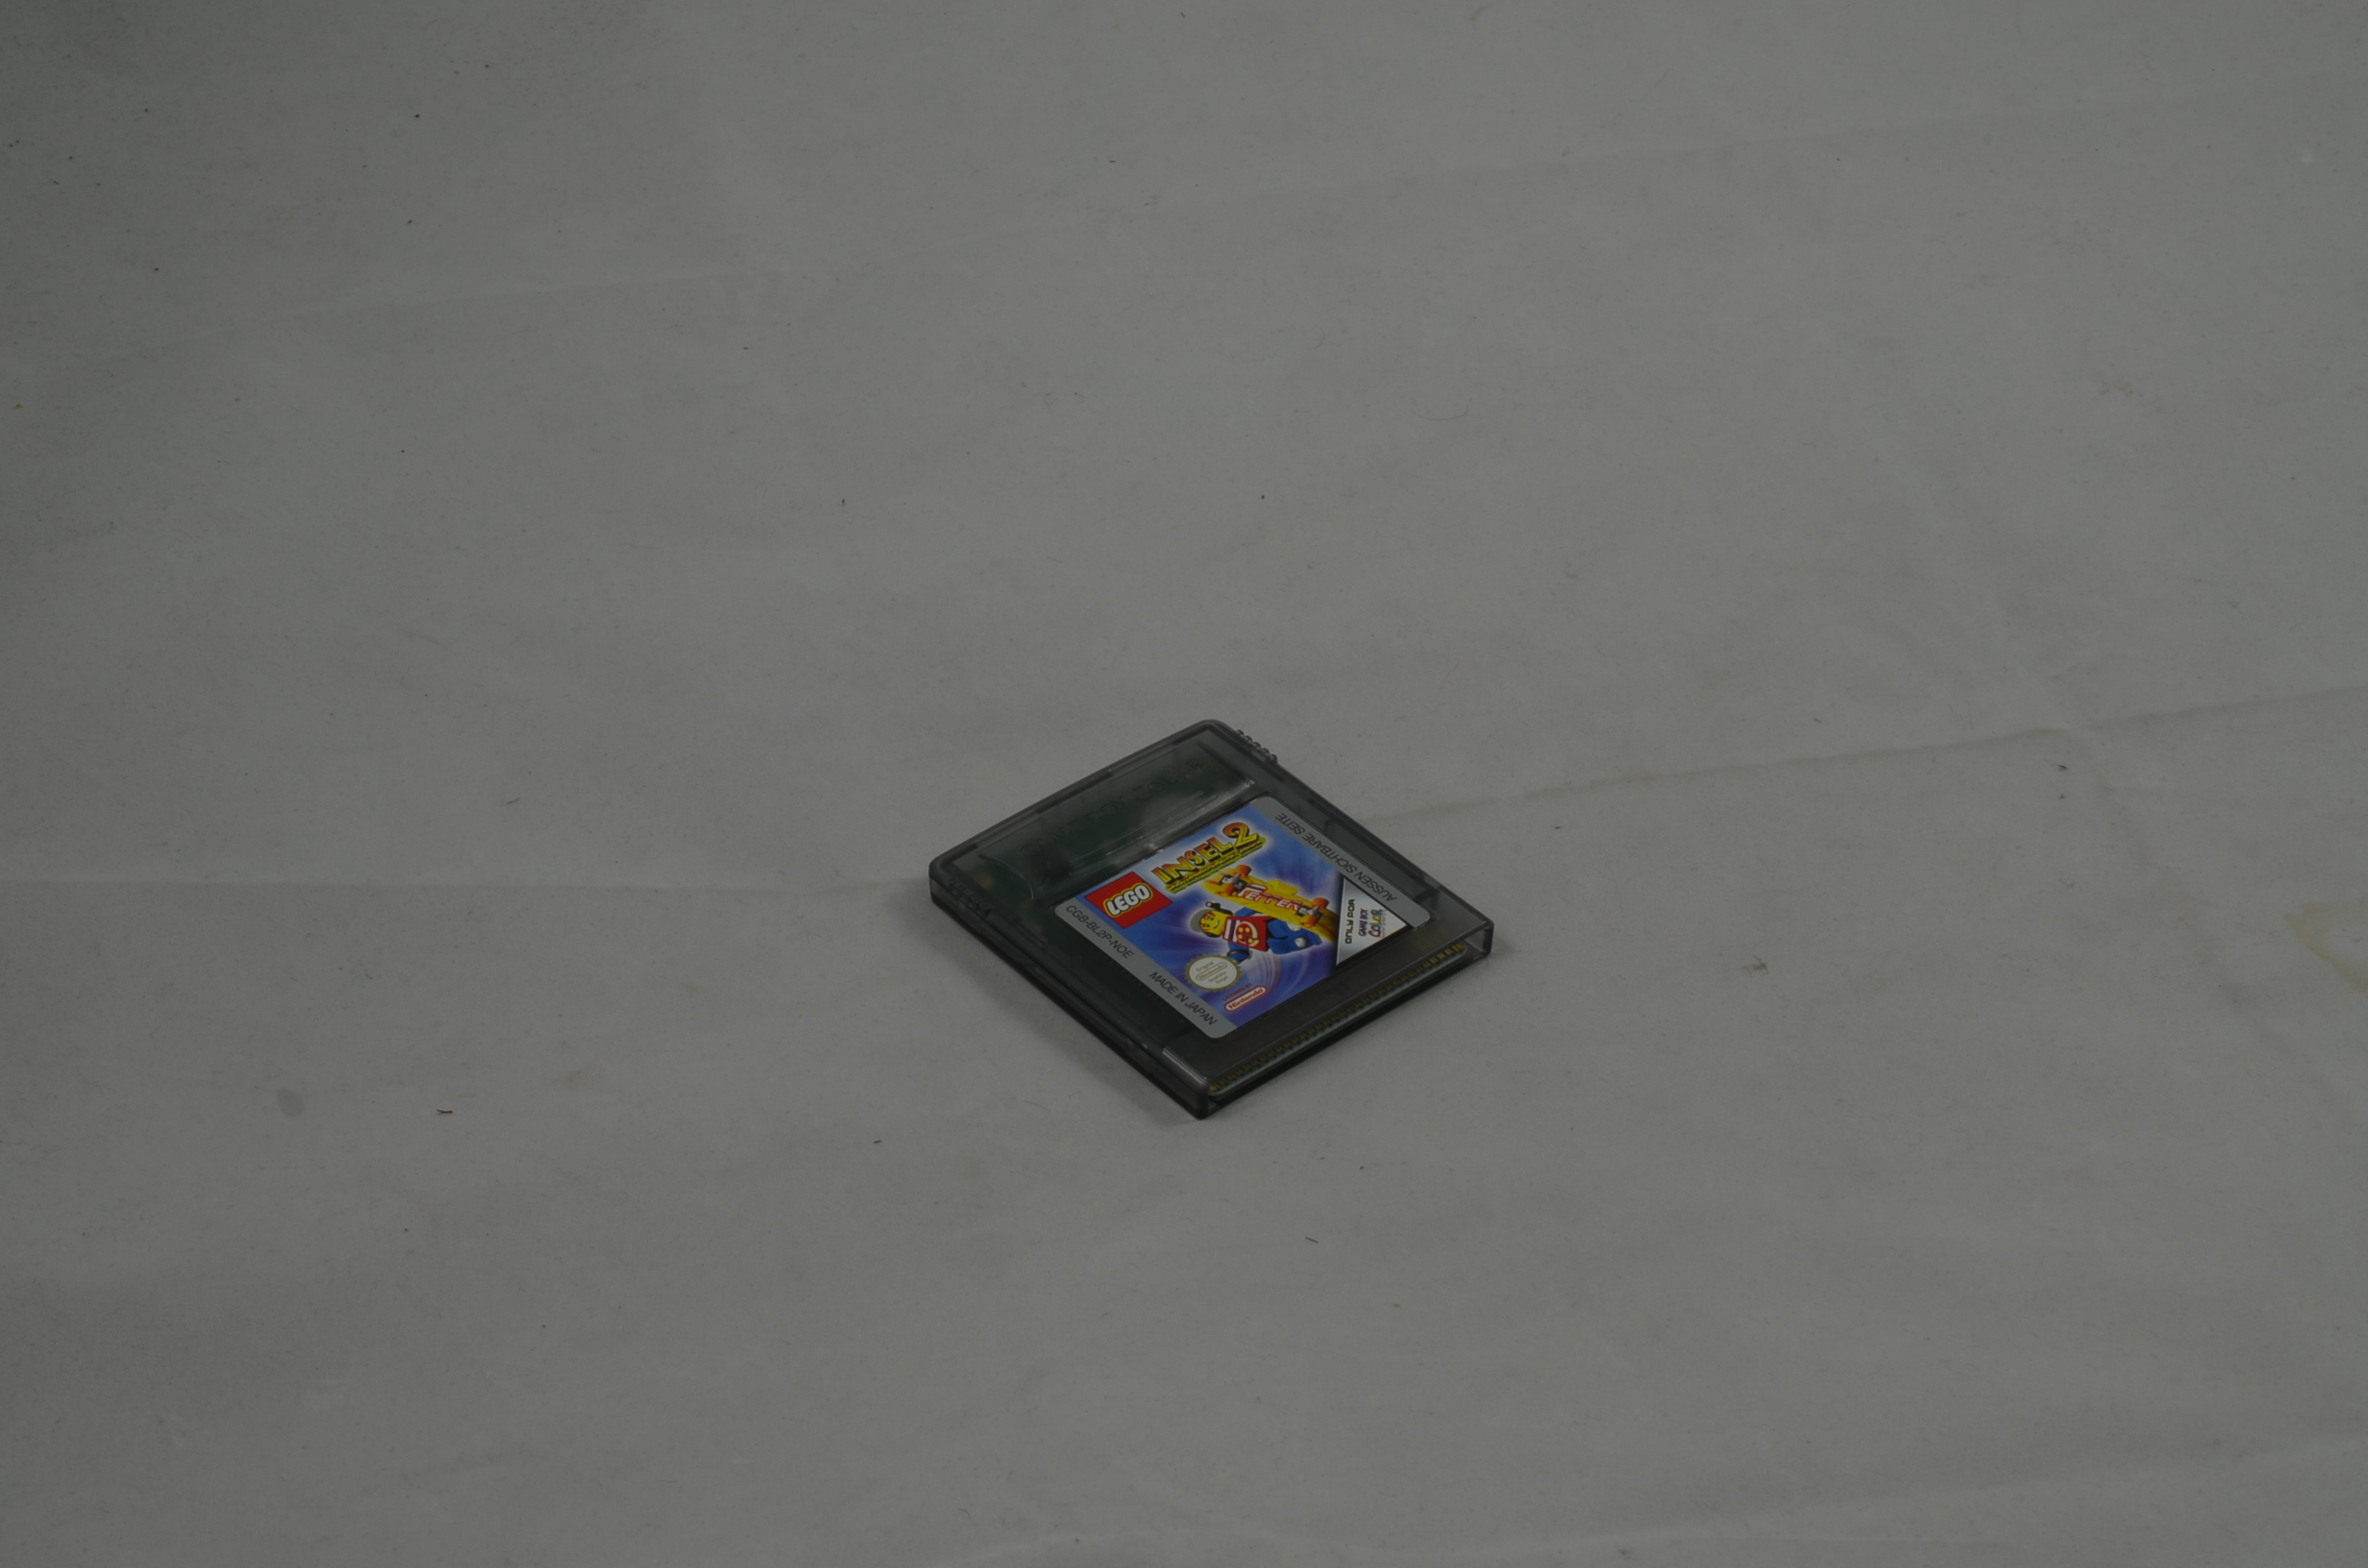 Produktbild von Lego Insel 2 Game Boy Color Spiel